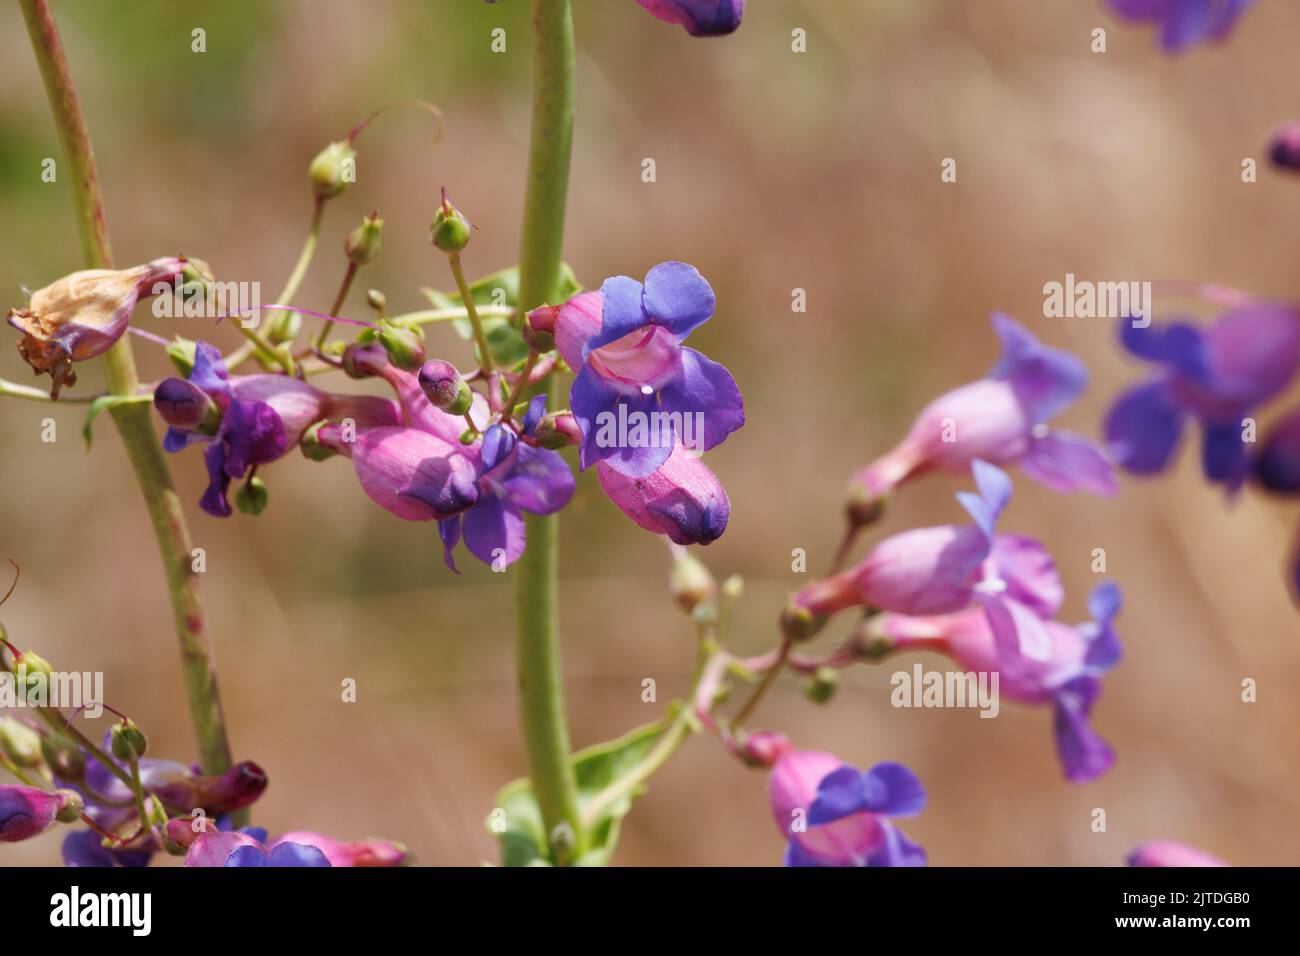 Violett blühende polydeterminierte dichasiate Thyrse von Penstemon spectabilis, Plantaginaceae, beheimatet in den San Bernardino Mountains, Frühling. Stockfoto